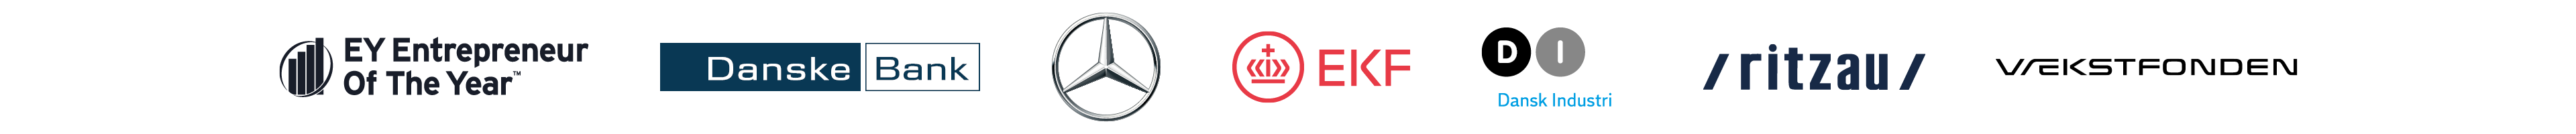 Logoer af samarbejdspartnere - EY Entrepreneur Of The Year